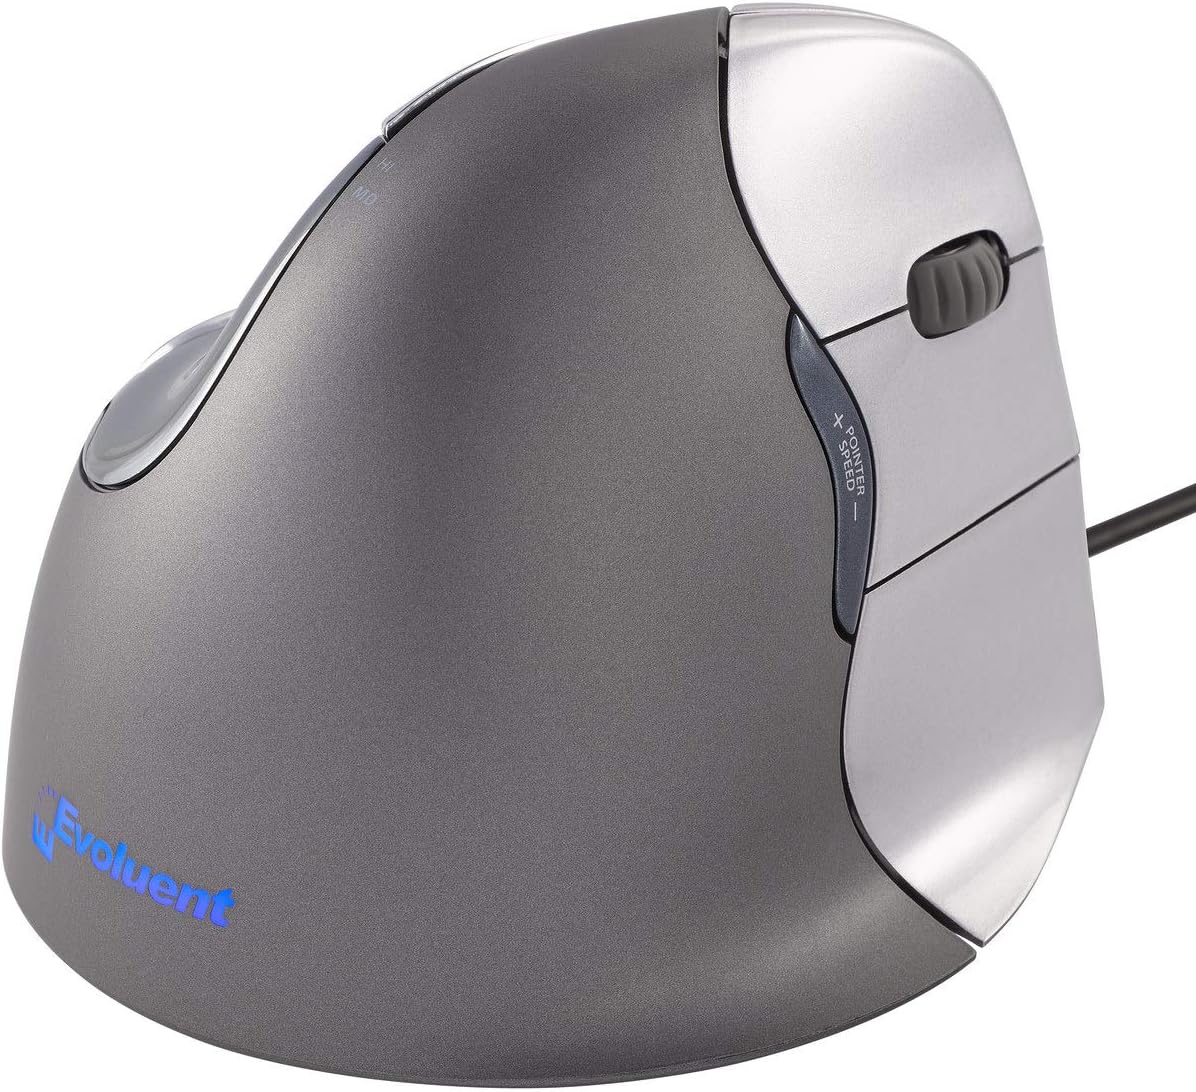 [8美國直購] Evoluent VM4R VerticalMouse 4 Right Hand Ergonomic Mouse 滑鼠 with Wired USB Connection (Regular Size)